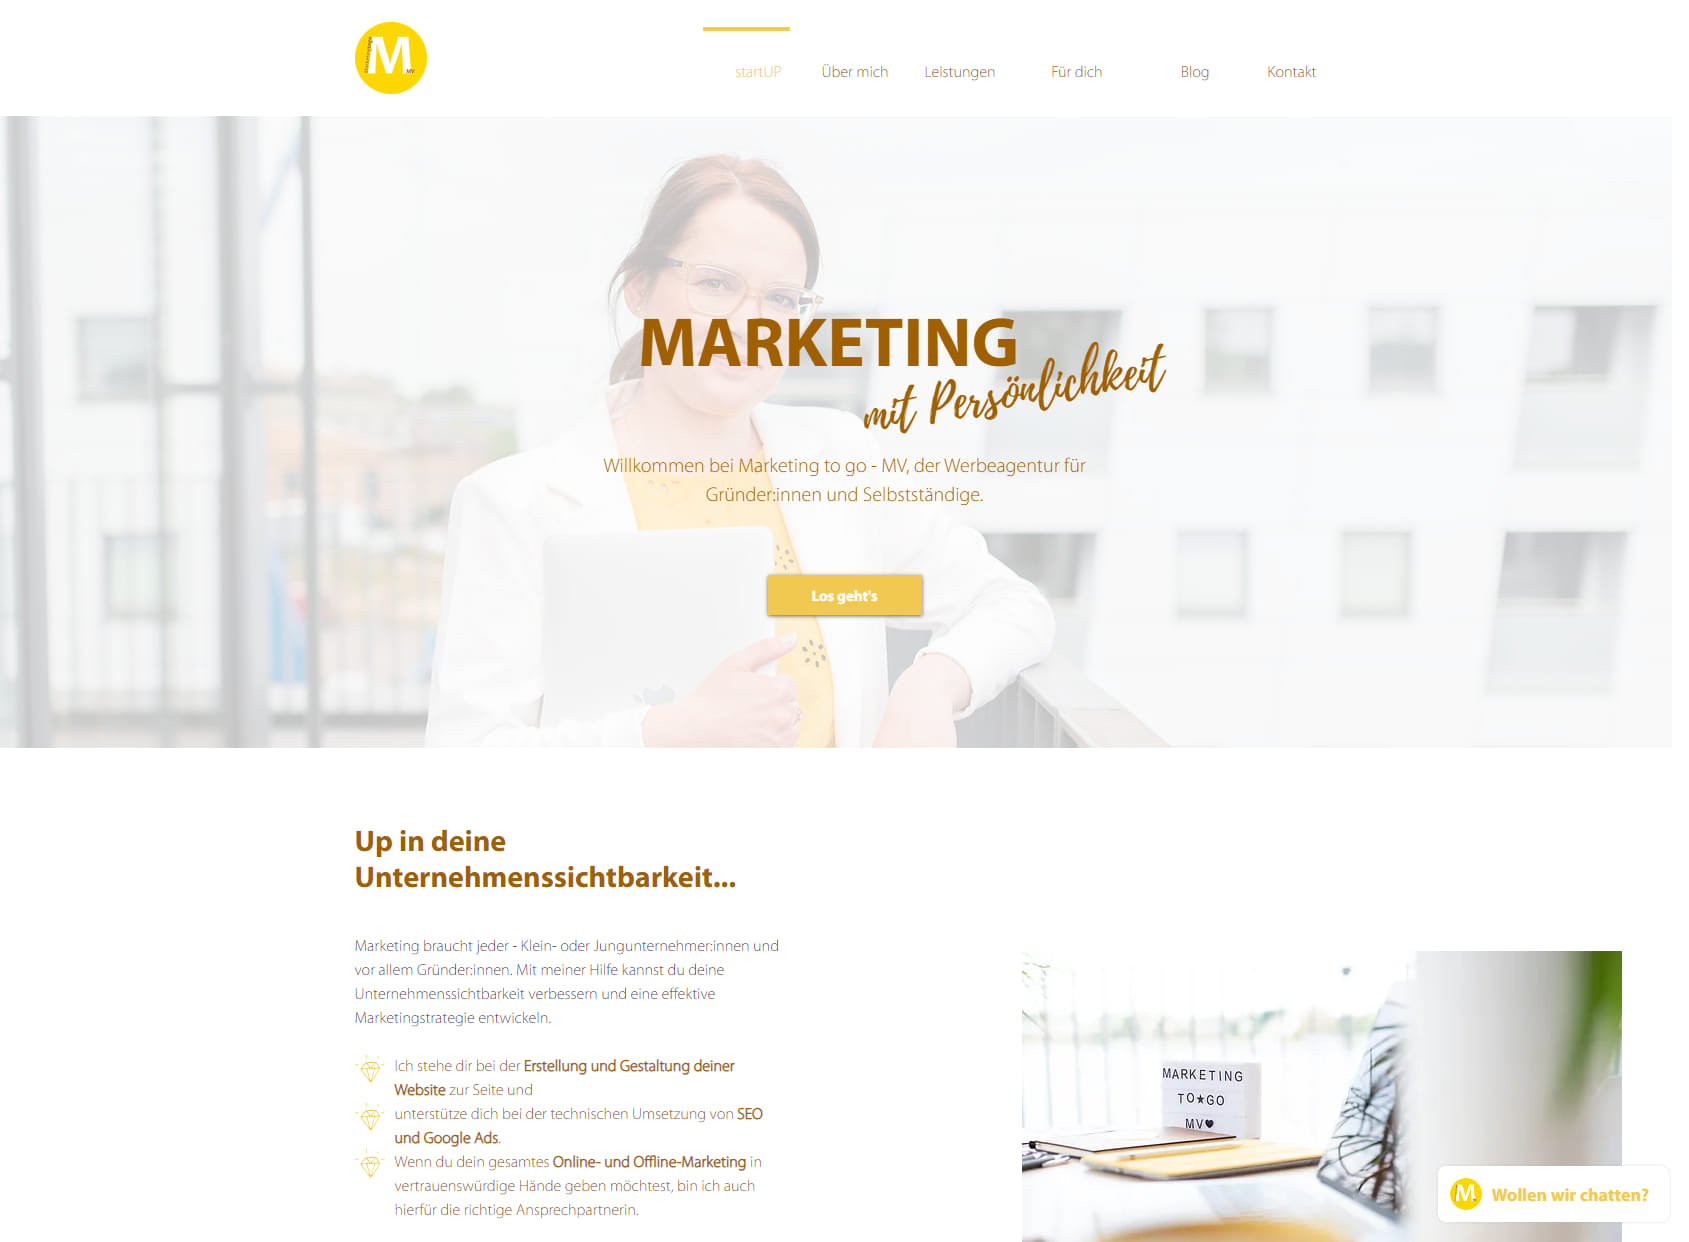 Marketing to go - MV | Werbeagentur